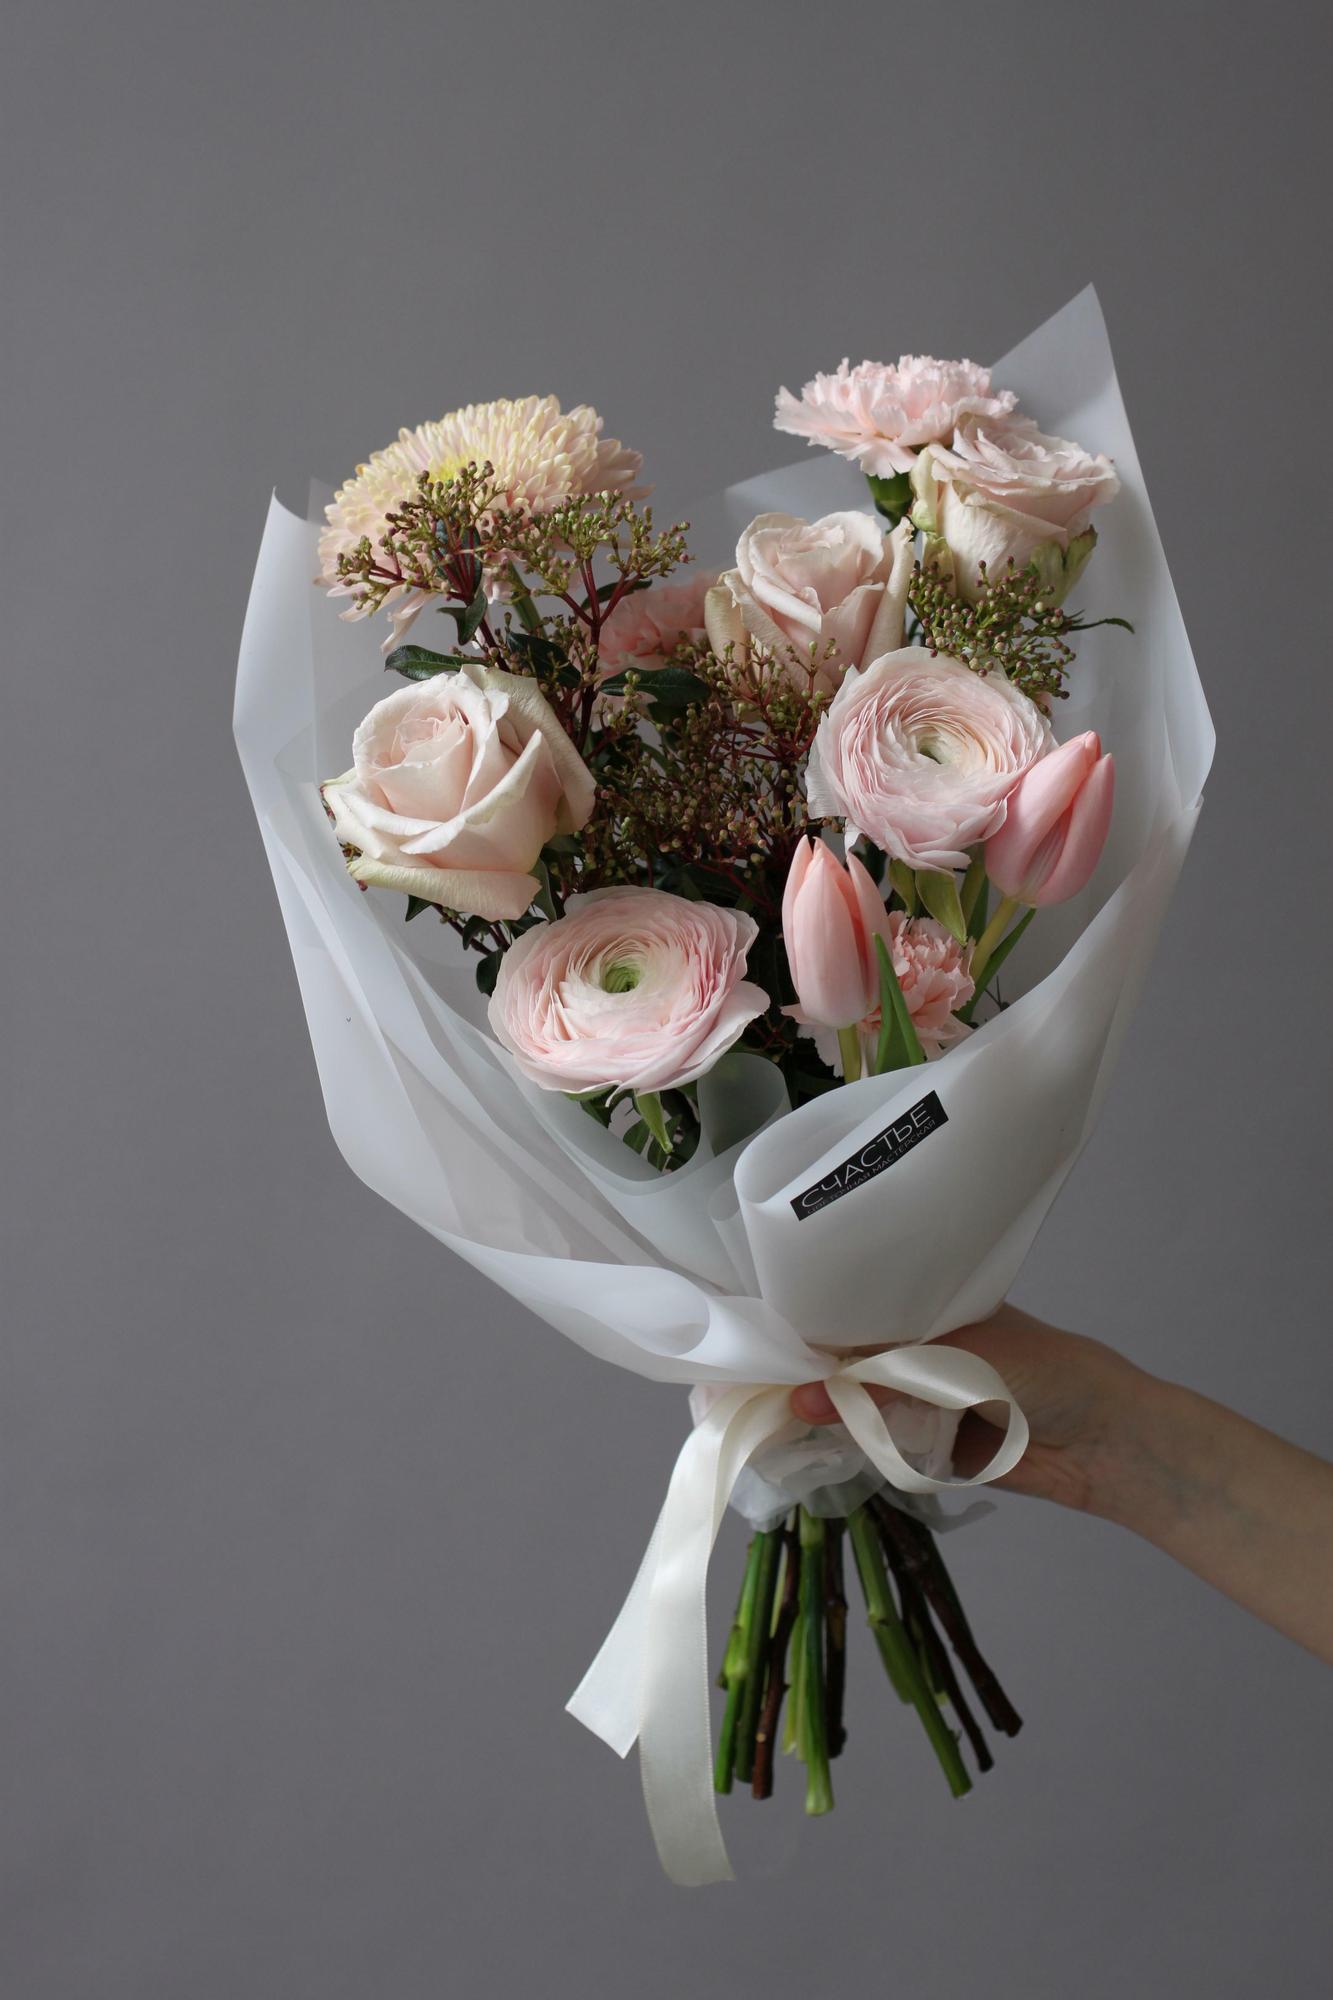 Купить вазу и кашпо для цветов в интернет-магазине La Rose